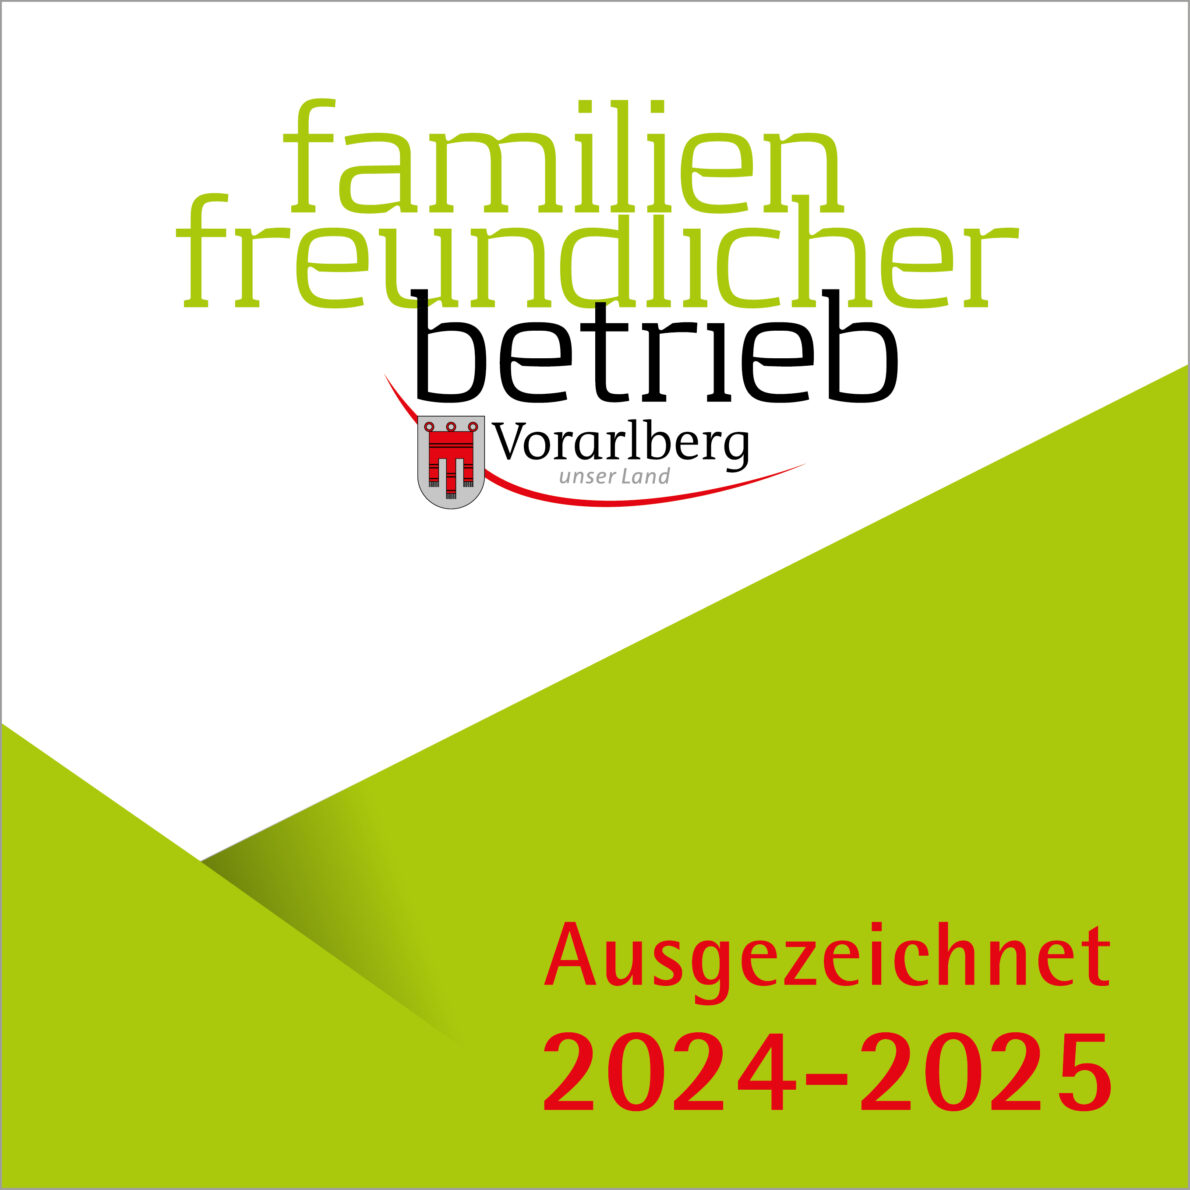 Familienfreundlicher Betrieb Ausgezeichnet 2024 2025